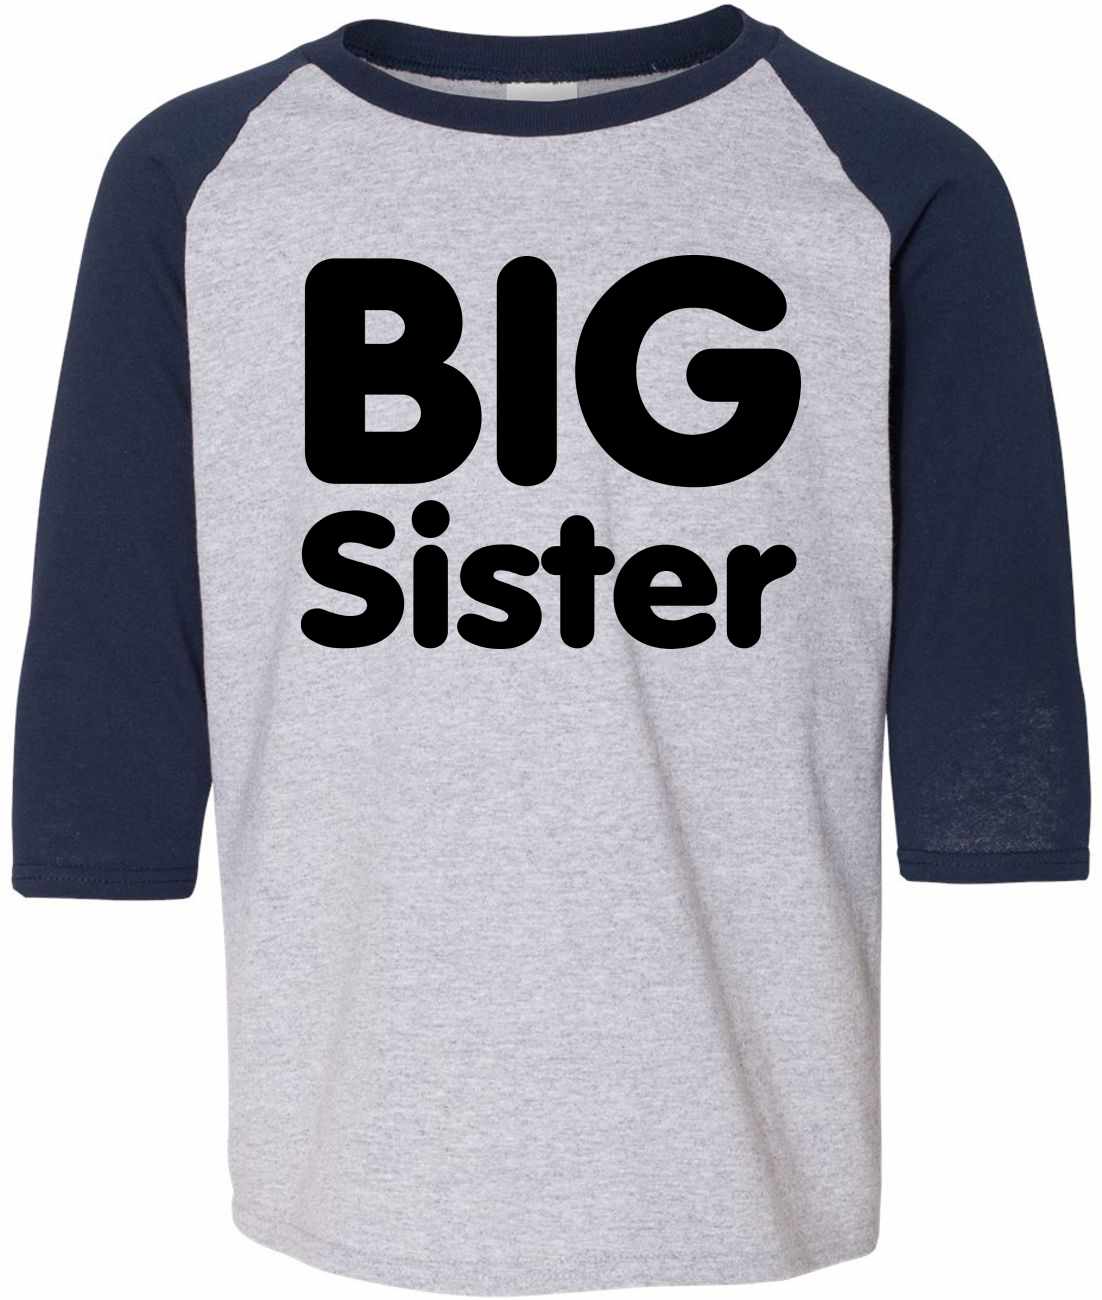 BIG SISTER on Youth Baseball Shirt (#853-212)